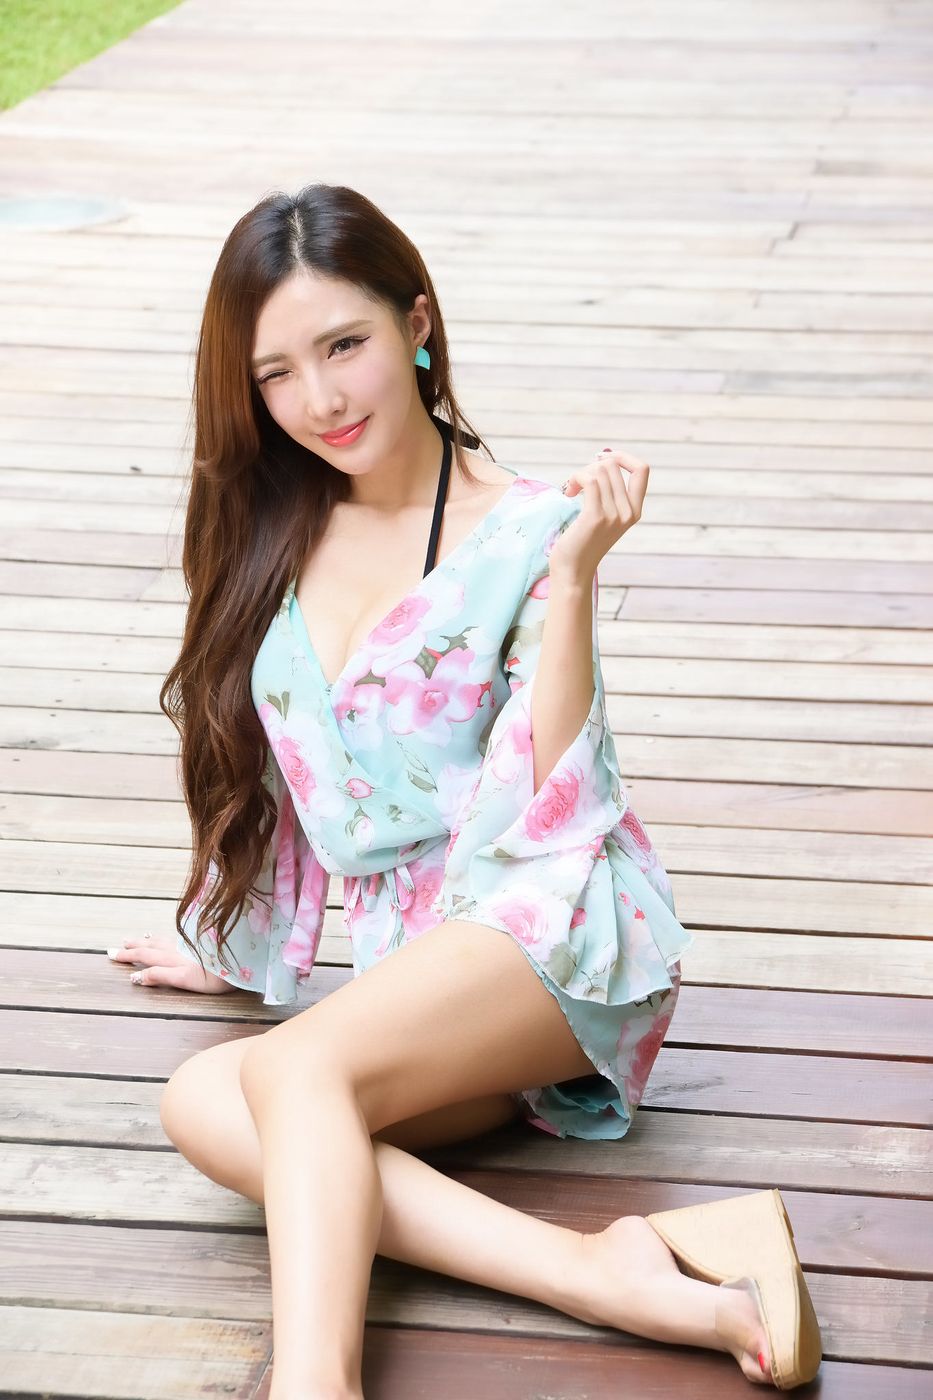 台湾美女腿模赵芸Syuan优雅各色长裙气质街拍写真